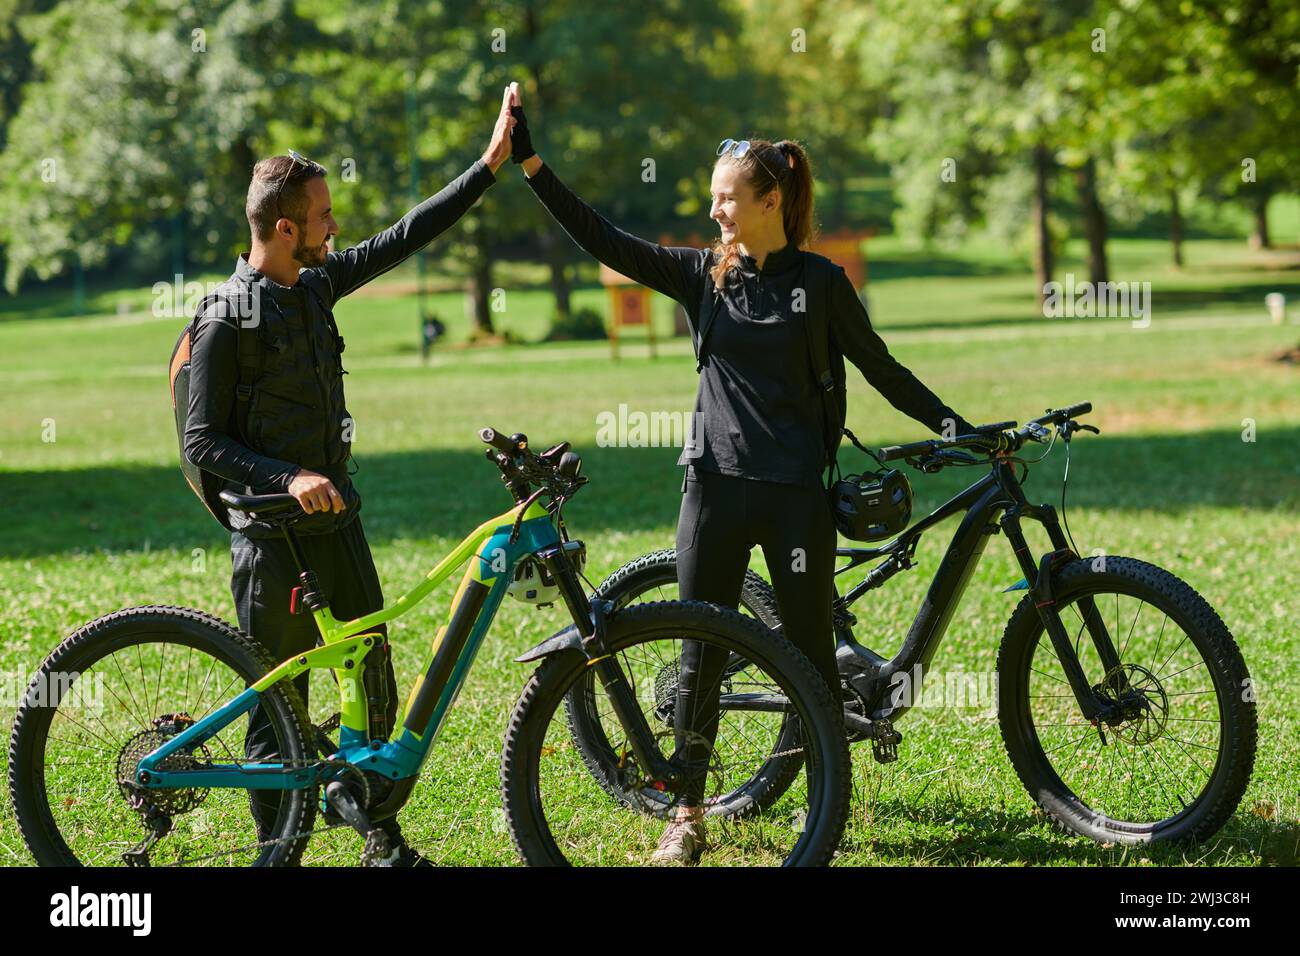 Un couple doux, orné d'équipement de cyclisme, monte leurs vélos, leurs mains imbriquées dans une étreinte romantique, capturant la esse Banque D'Images